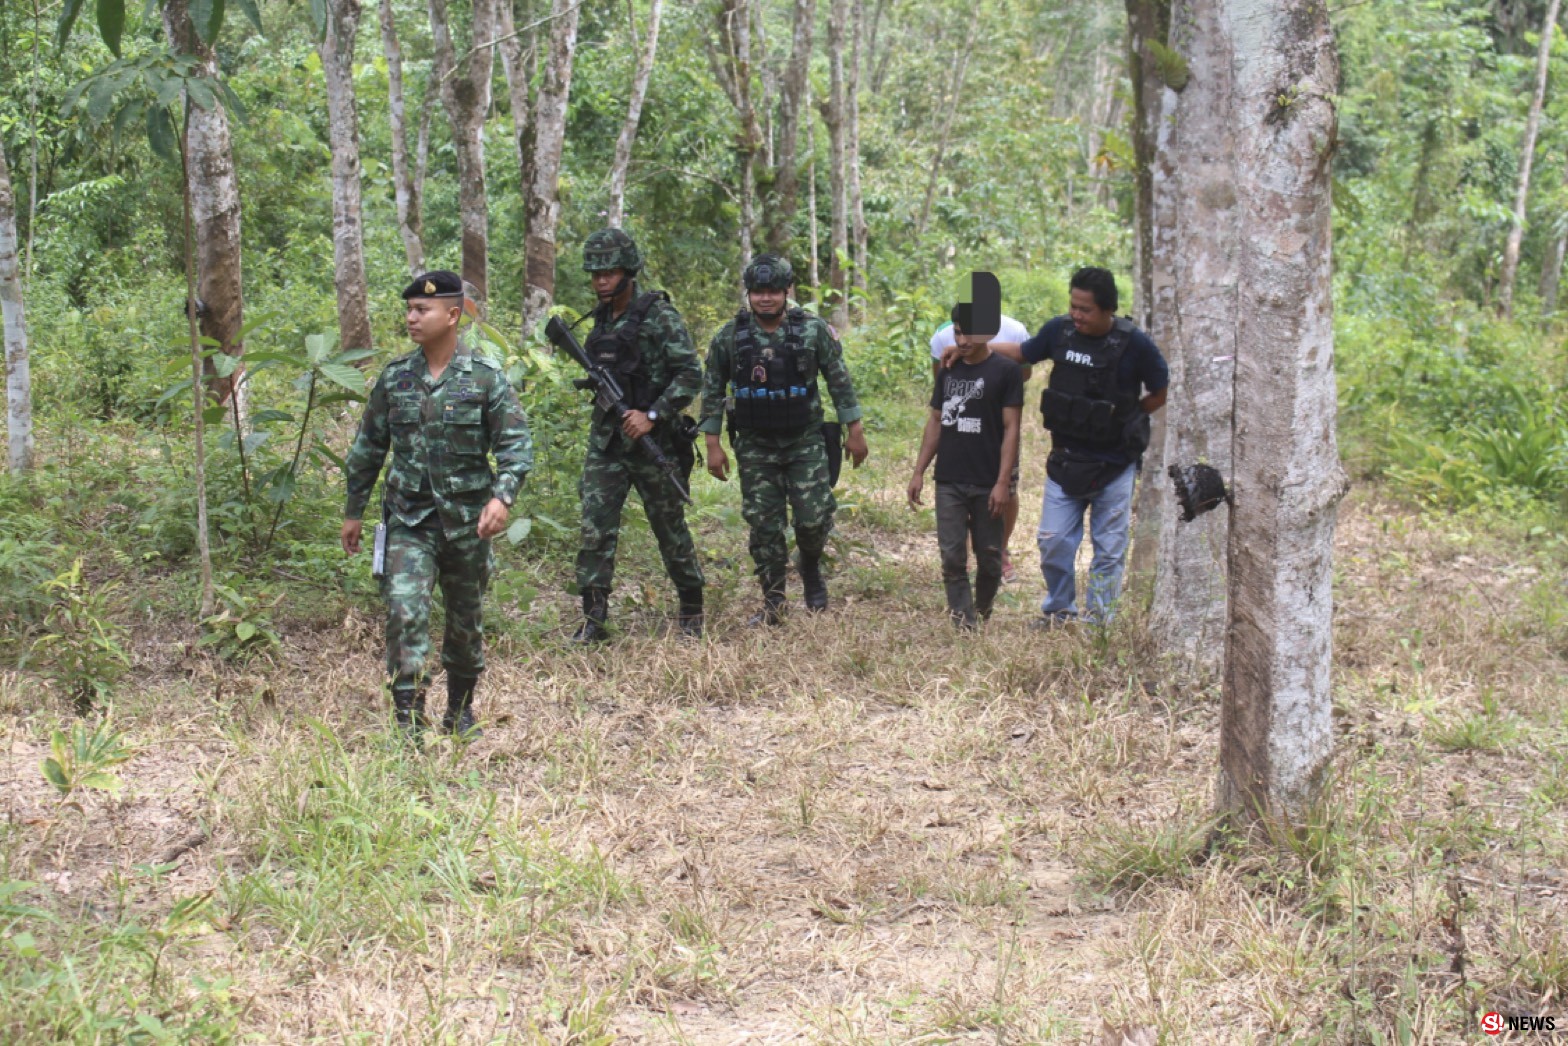 ตชด.445 ร่วมกับทหารชุดควบคุมป้องกันชายแดน จับวัยรุ่นขนใบกระท่อม ในป่าใกล้ถนนเลียบชายแดนไทย-มาเลเซีย ในพื้นที่ อ.เบตง จ.ยะลา